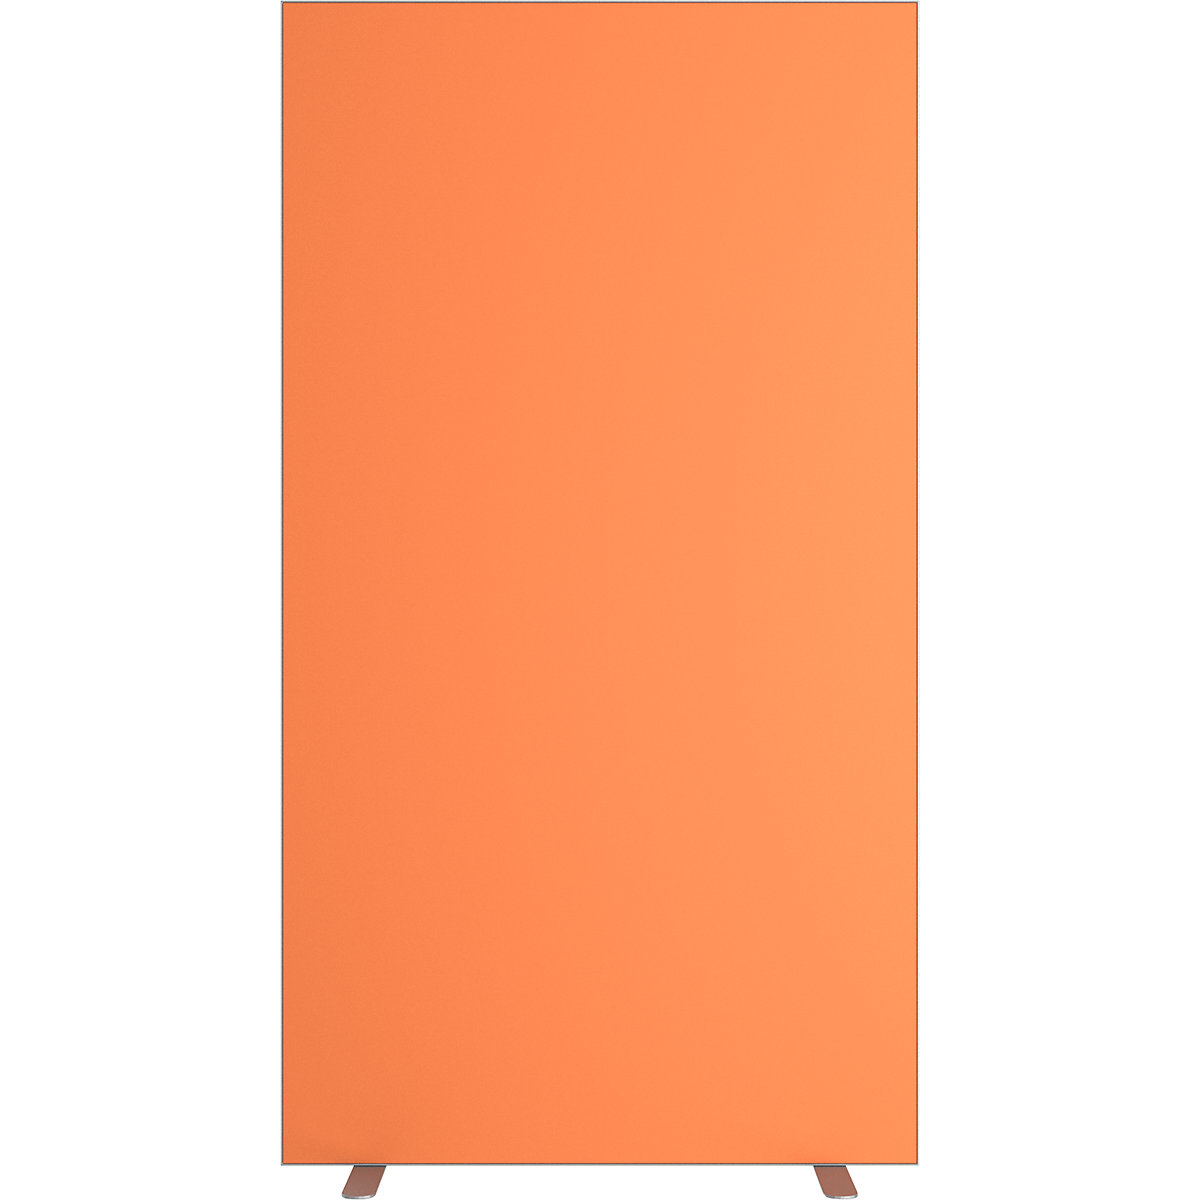 Parete divisoria easyScreen, tinta unita, arancione, larghezza 940 mm-10